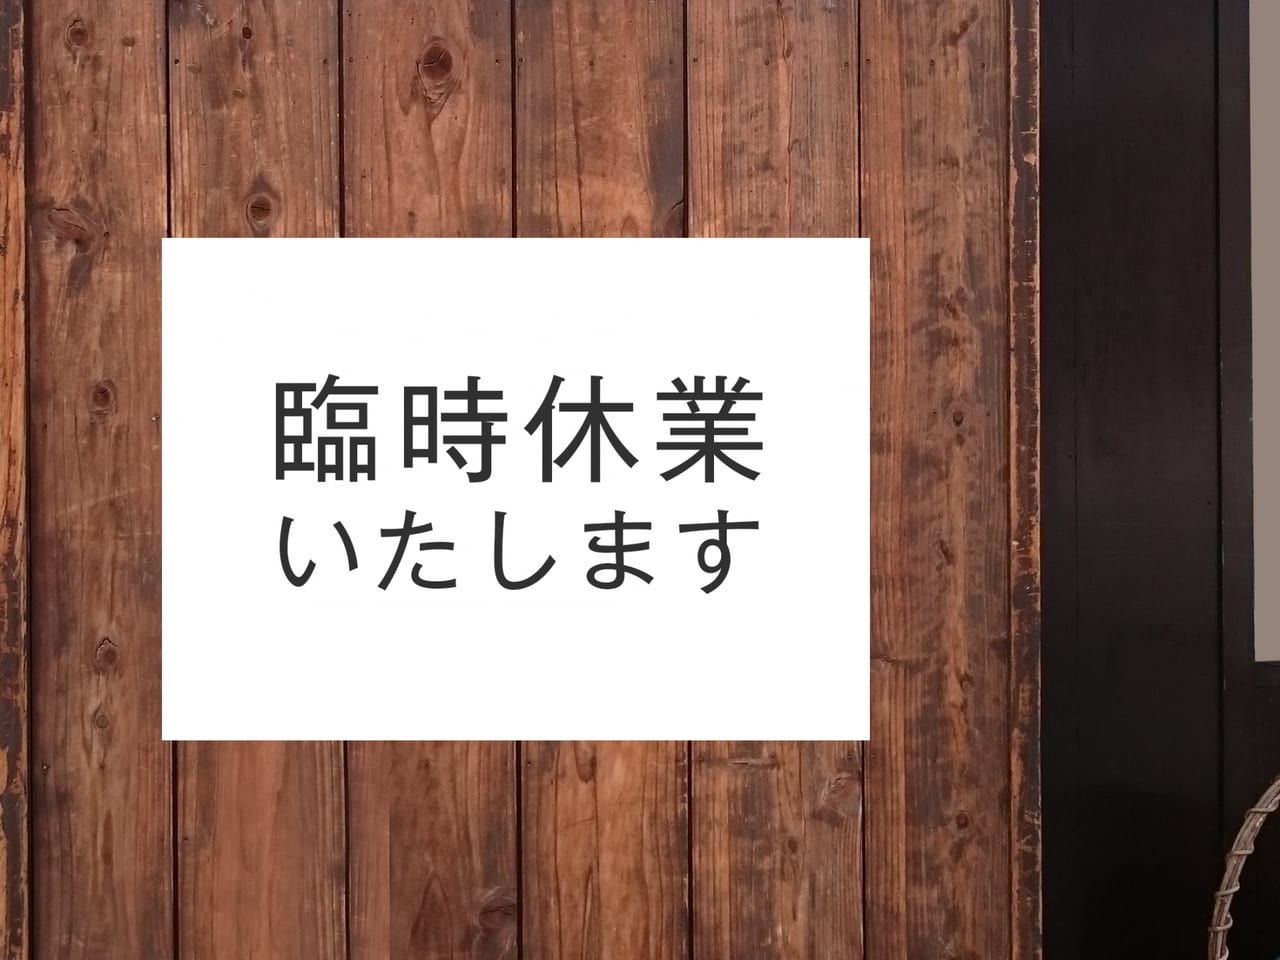 松戸市 全国カラオケチェーン店舗数日本最大級のカラオケ まねきねこ 一部店舗で臨時休業発表 松戸市内は 4店舗となります 号外net 松戸市